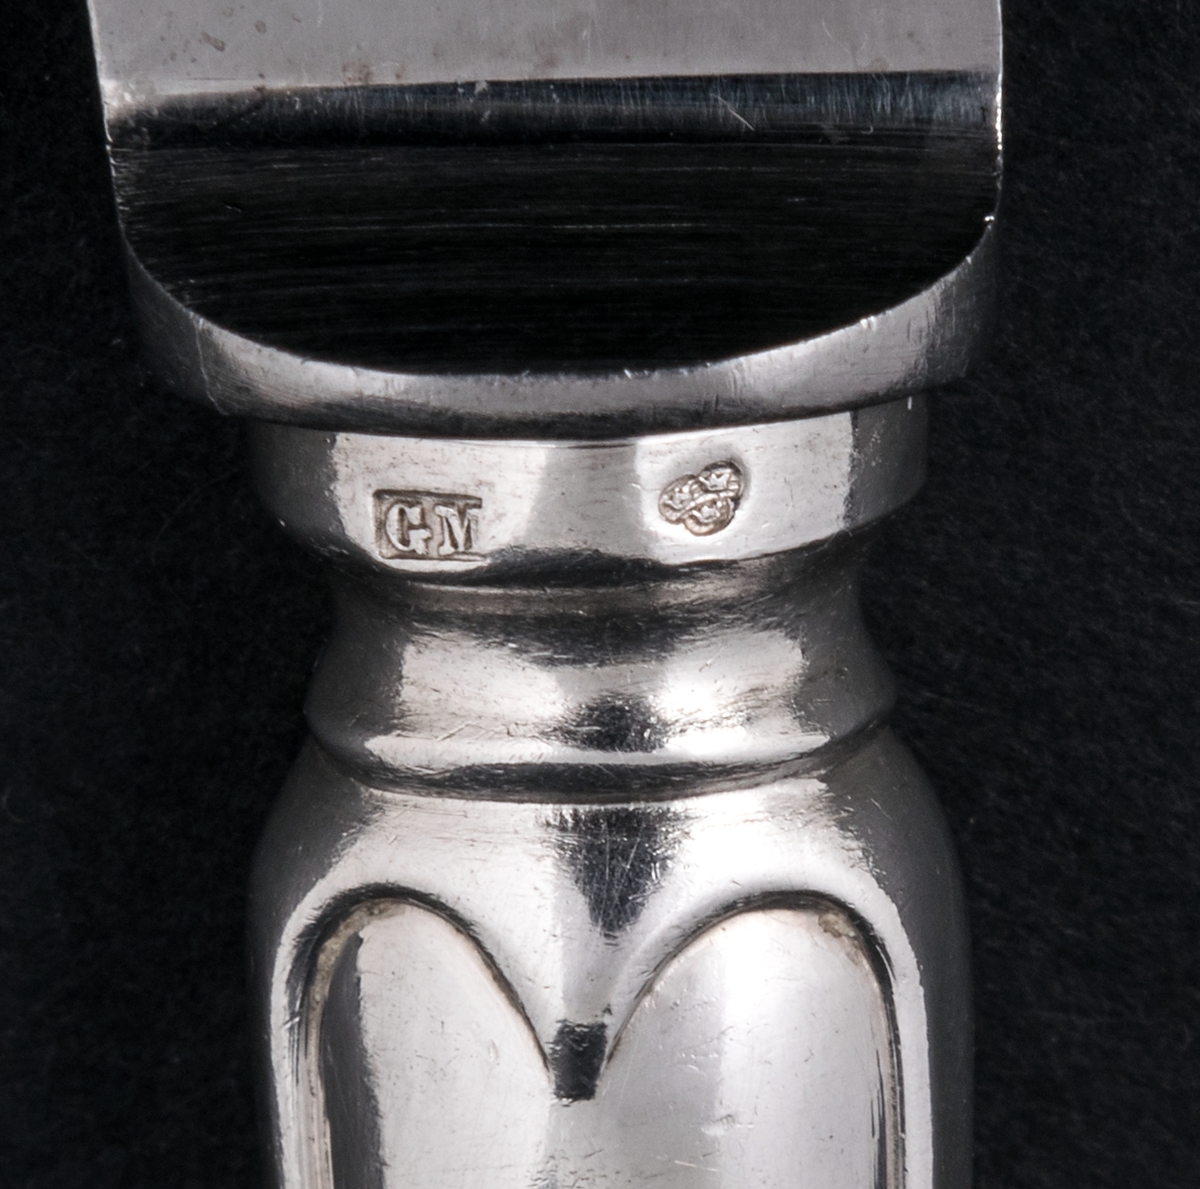 24 stycken matknivar av silver. Linjeartat ornament på skaftet. Gammelfransk modell.
Stämplad: GM F7 Kontrollstämpel, Sthlm.

Monogram: PE